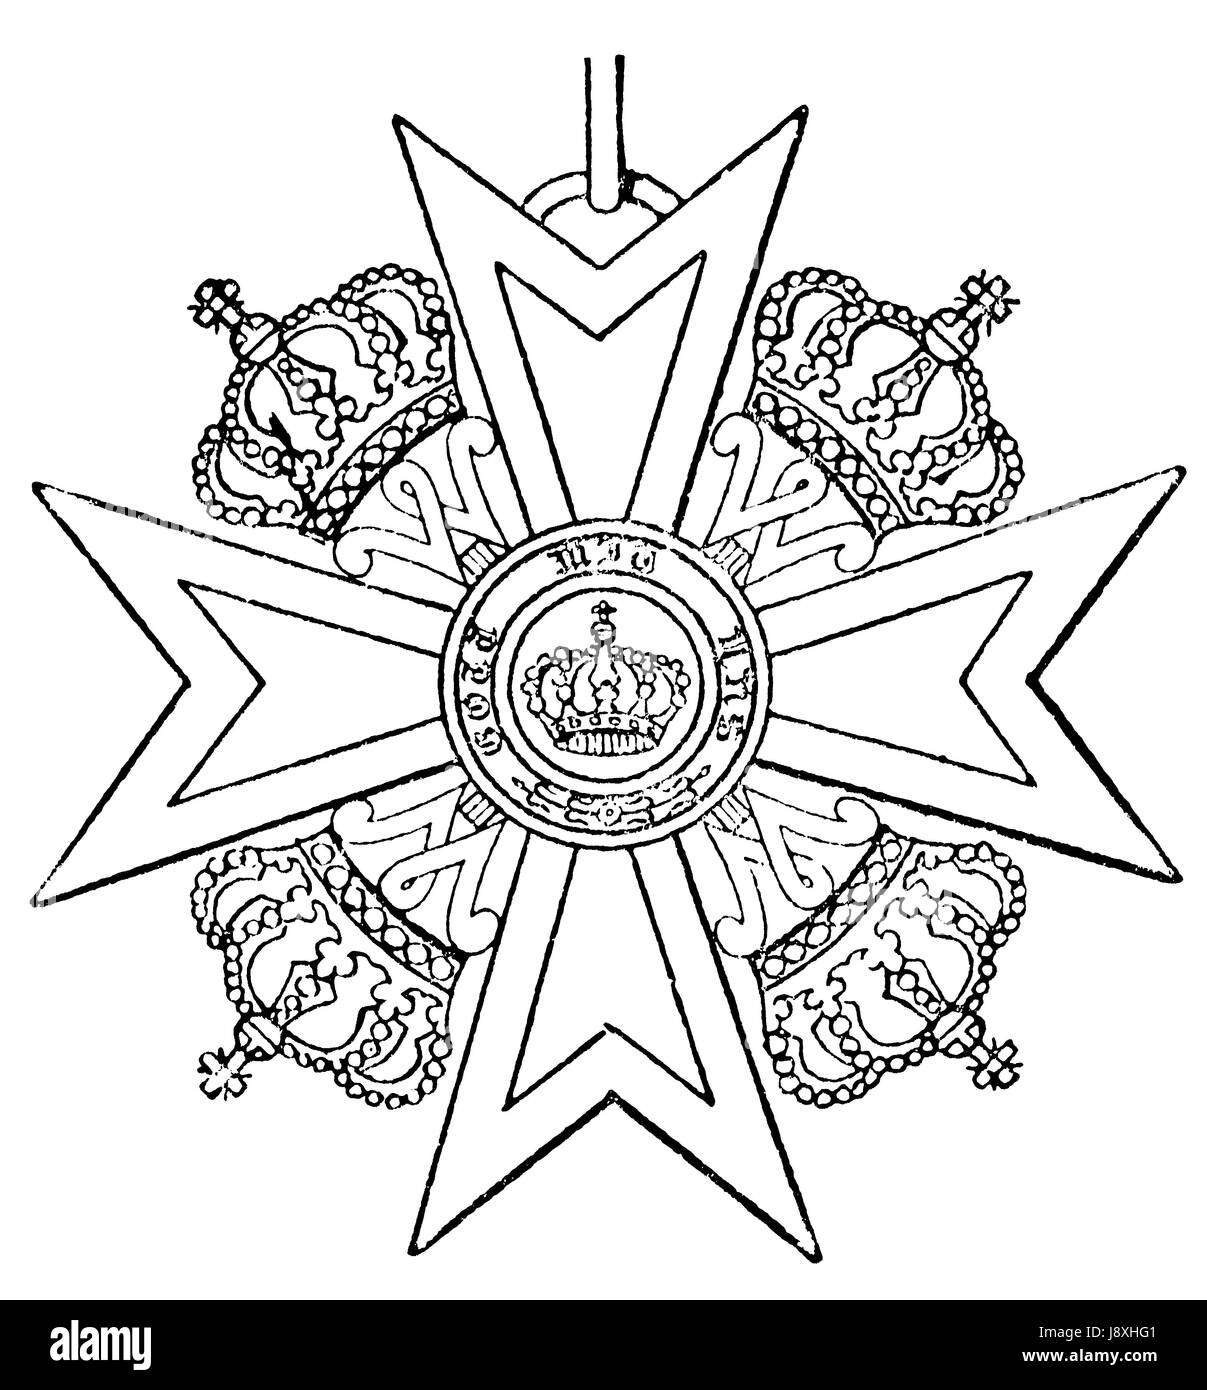 cross, prussian, prussia, merit, kingdom, crown, order, emblem, cross, black, Stock Photo